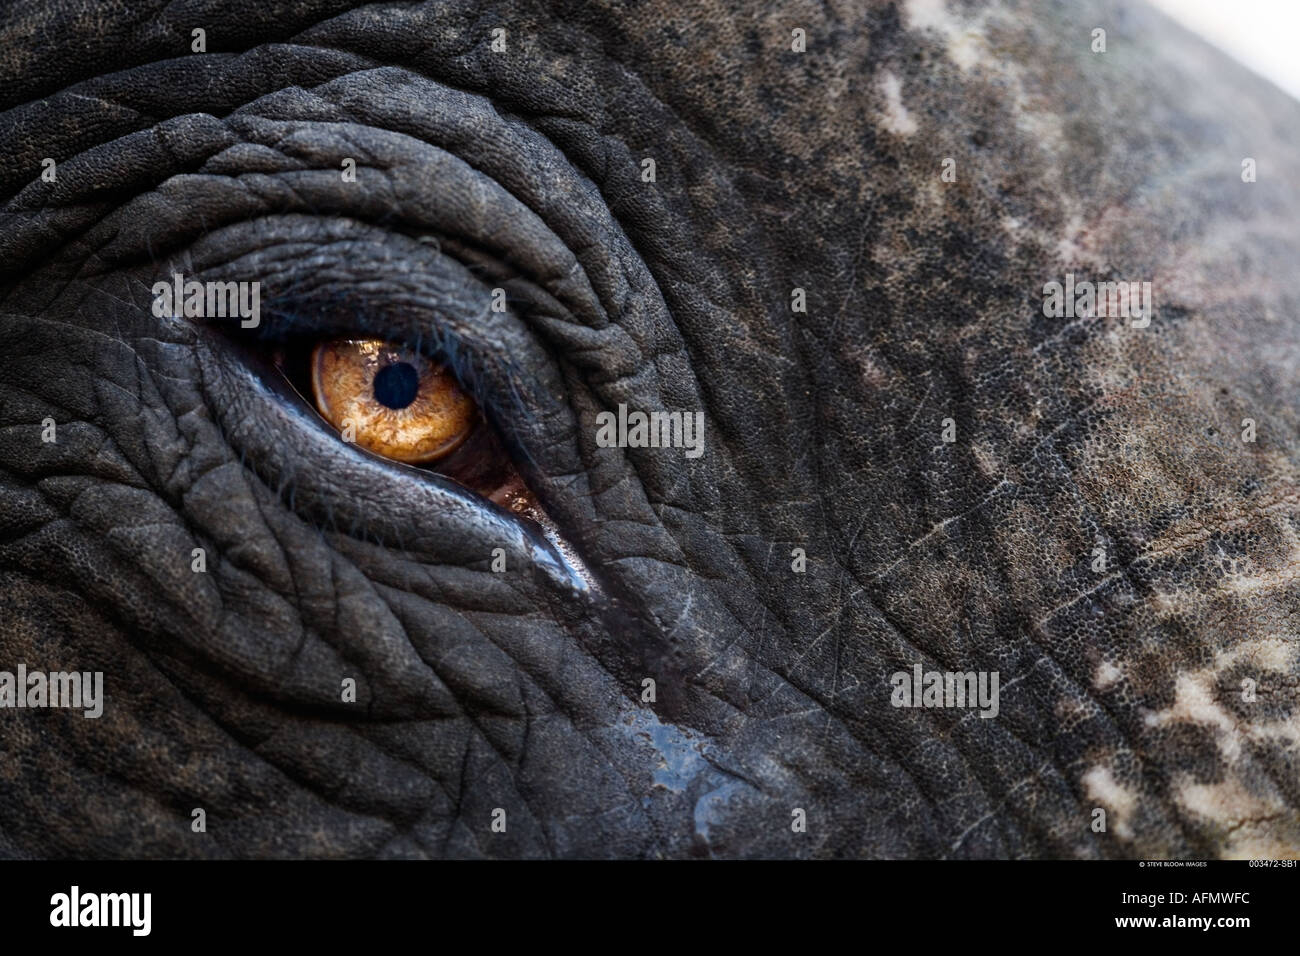 Close up of elephant s eye des restes de peinture de l'éléphant sur la peau toujours à l'affiche du festival Jaipur en Inde Banque D'Images